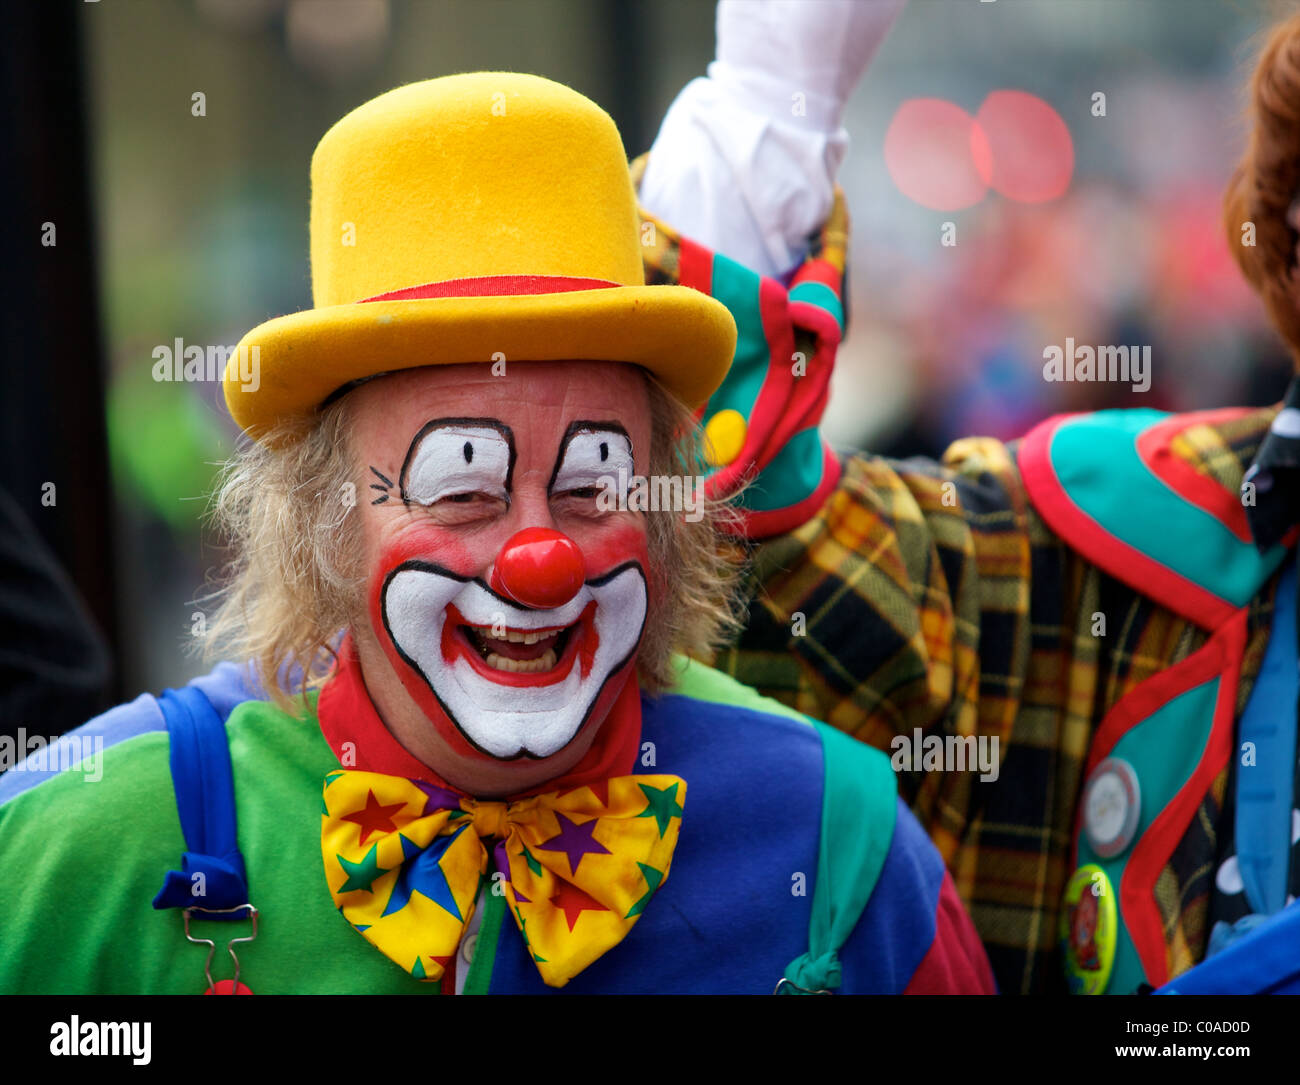 Cappello da clown immagini e fotografie stock ad alta risoluzione - Alamy